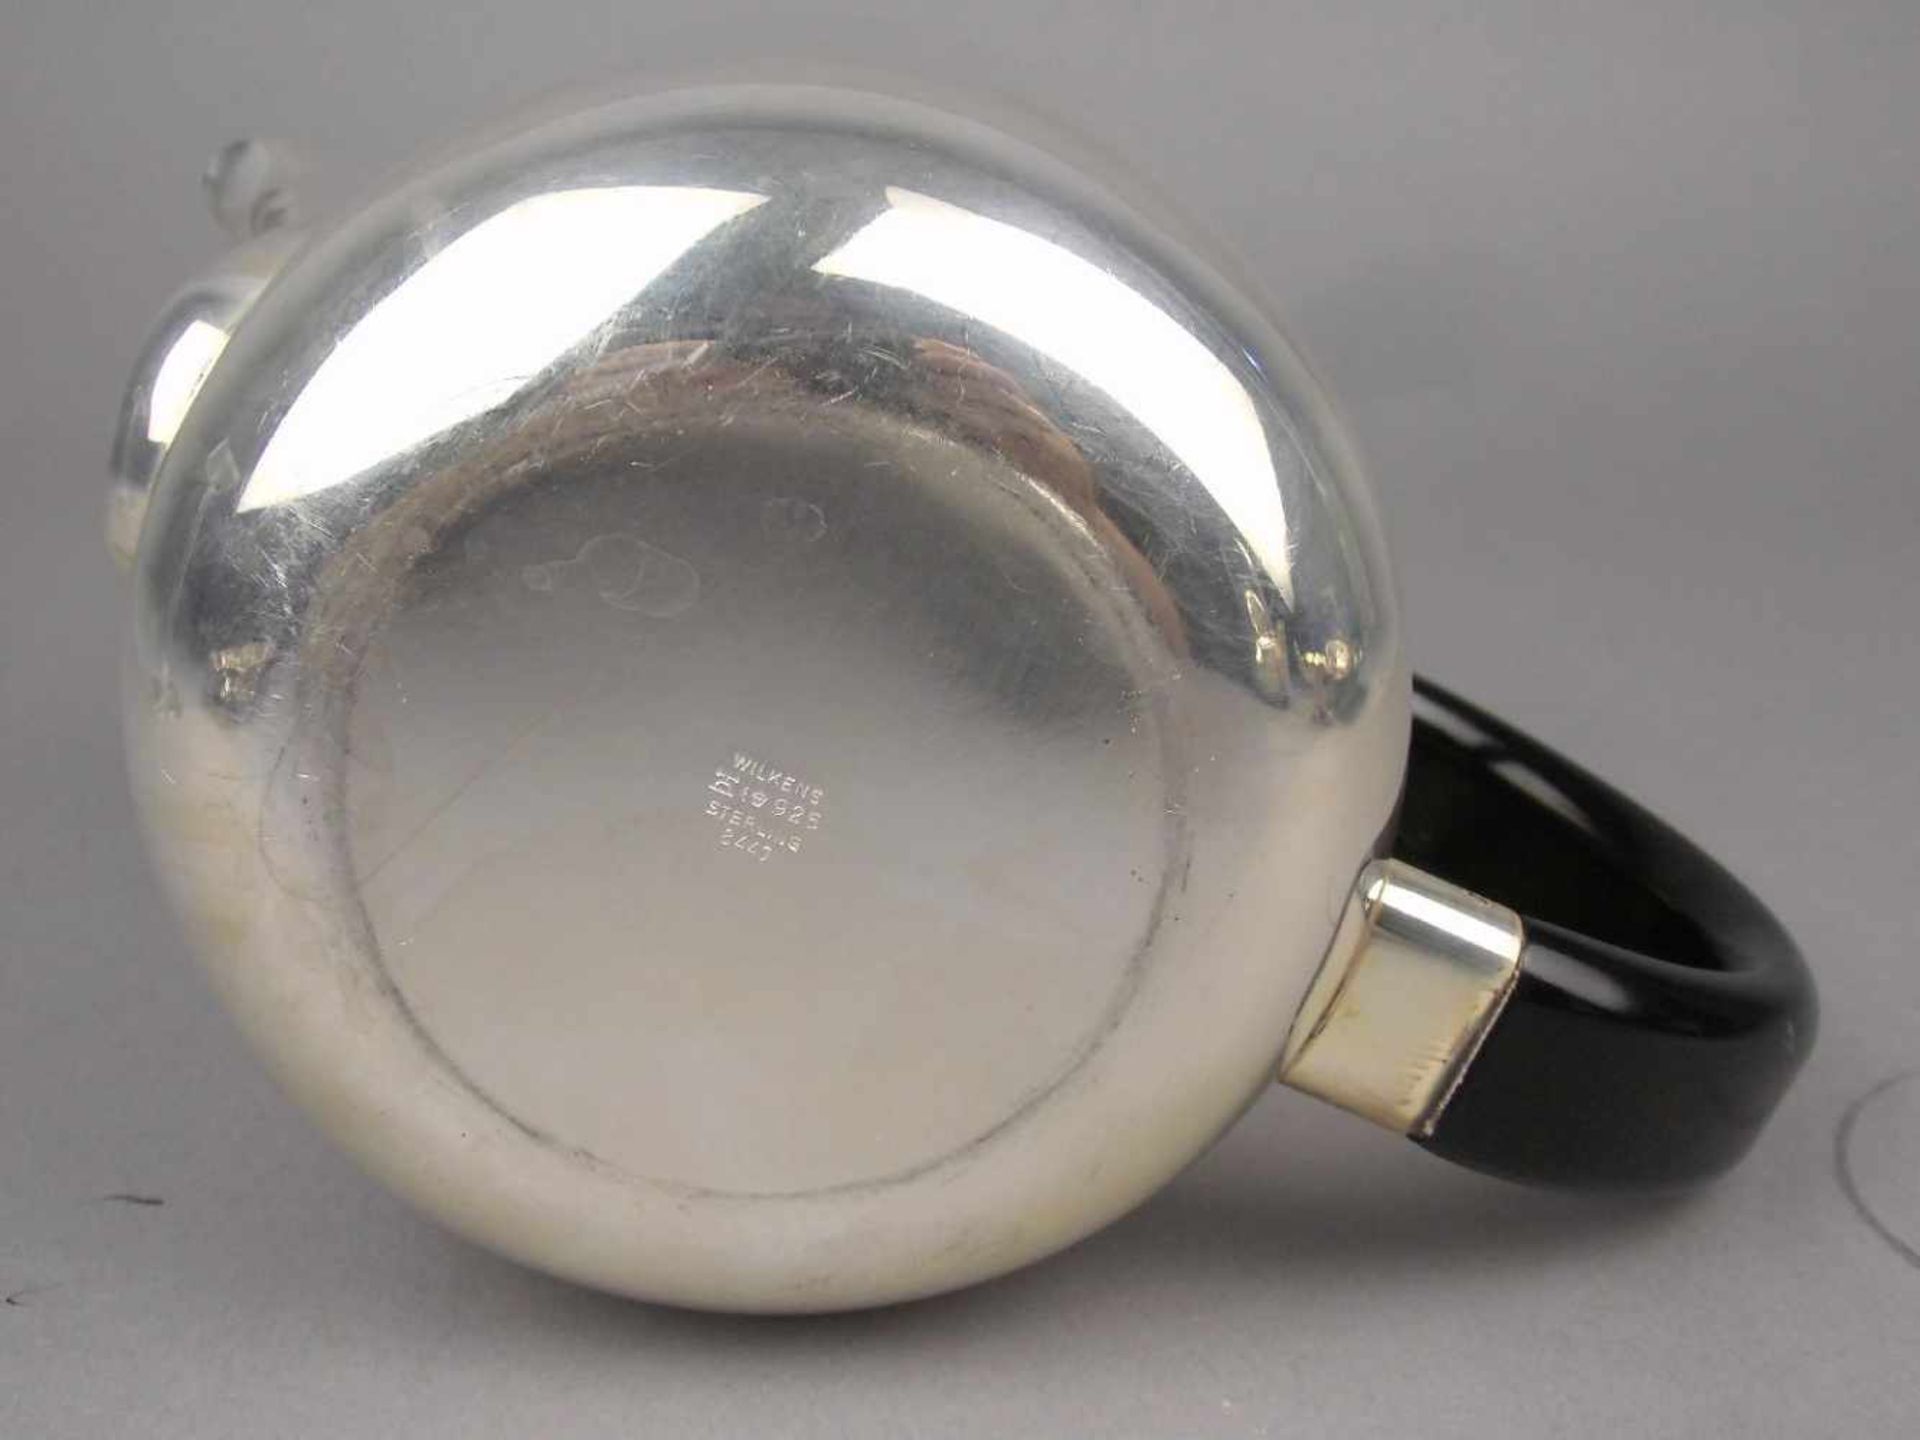 KAFFEEKANNE IM BAUHAUS - STIL, Form Silhouette, 925er Silber (776 g), gepunzt mit Halbmond, Krone, - Image 7 of 7